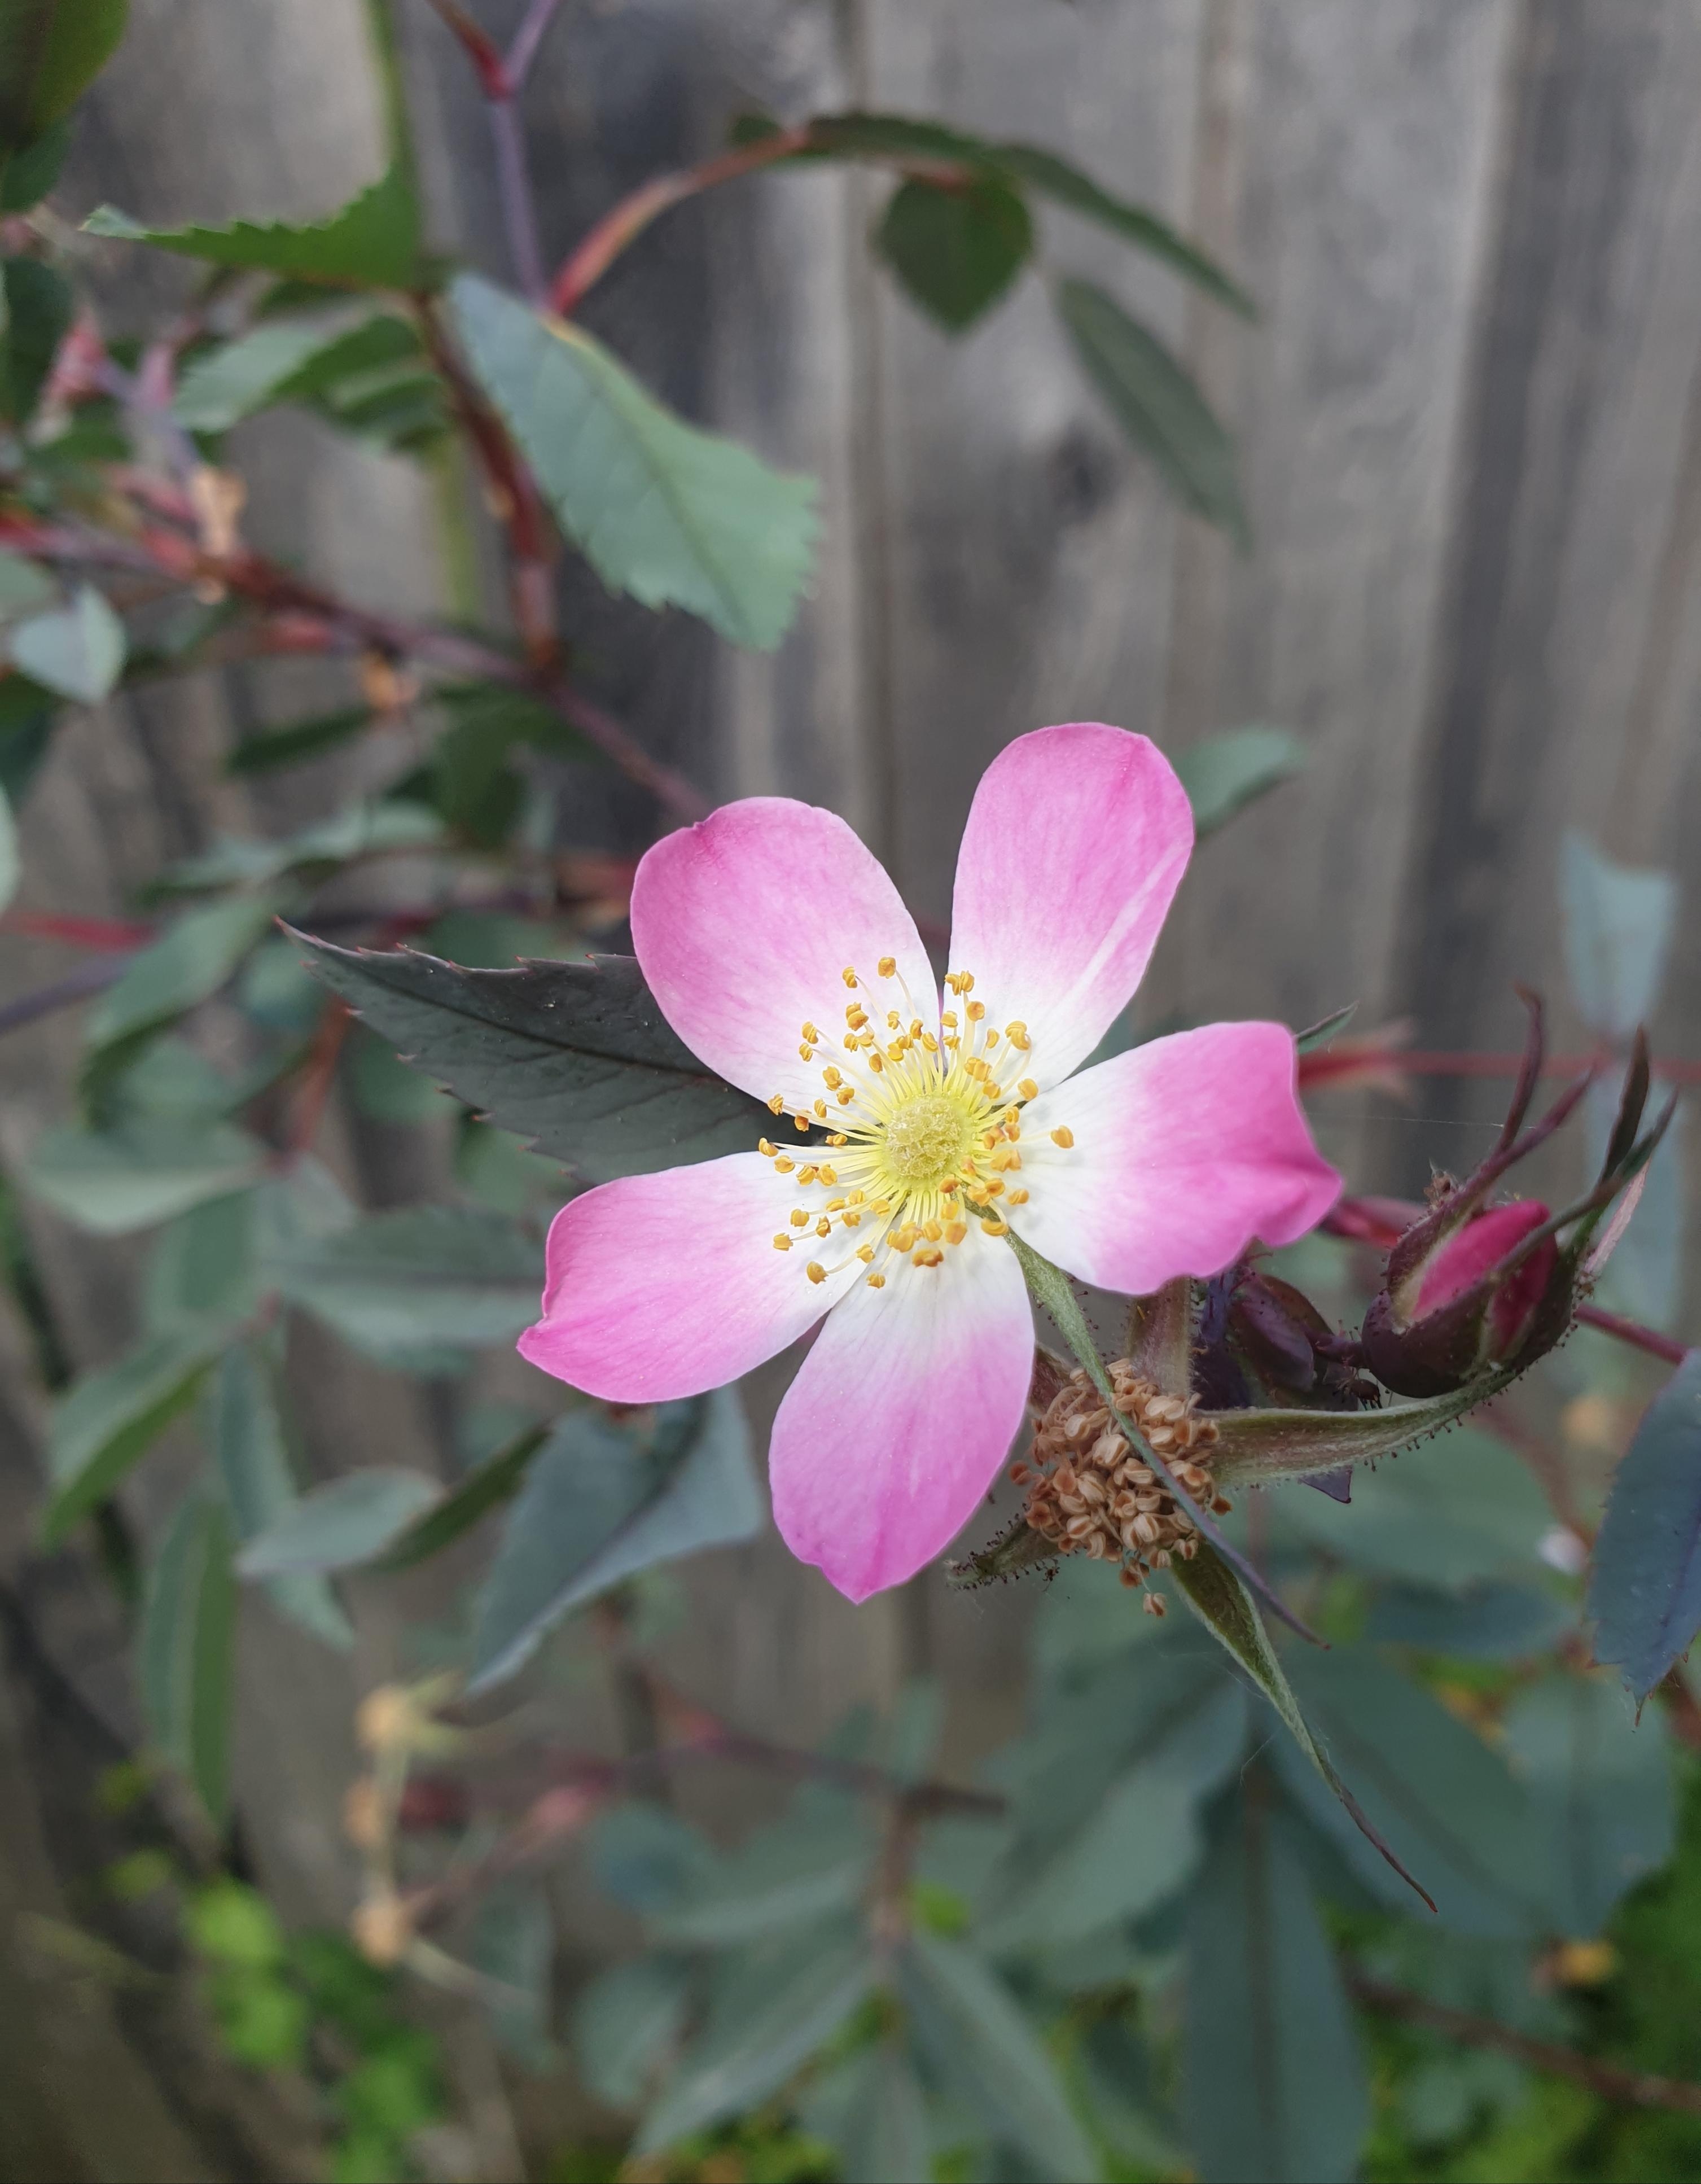 Wildrosenliebe..
#Gartenliebe#einheimischPflanze#
#pink